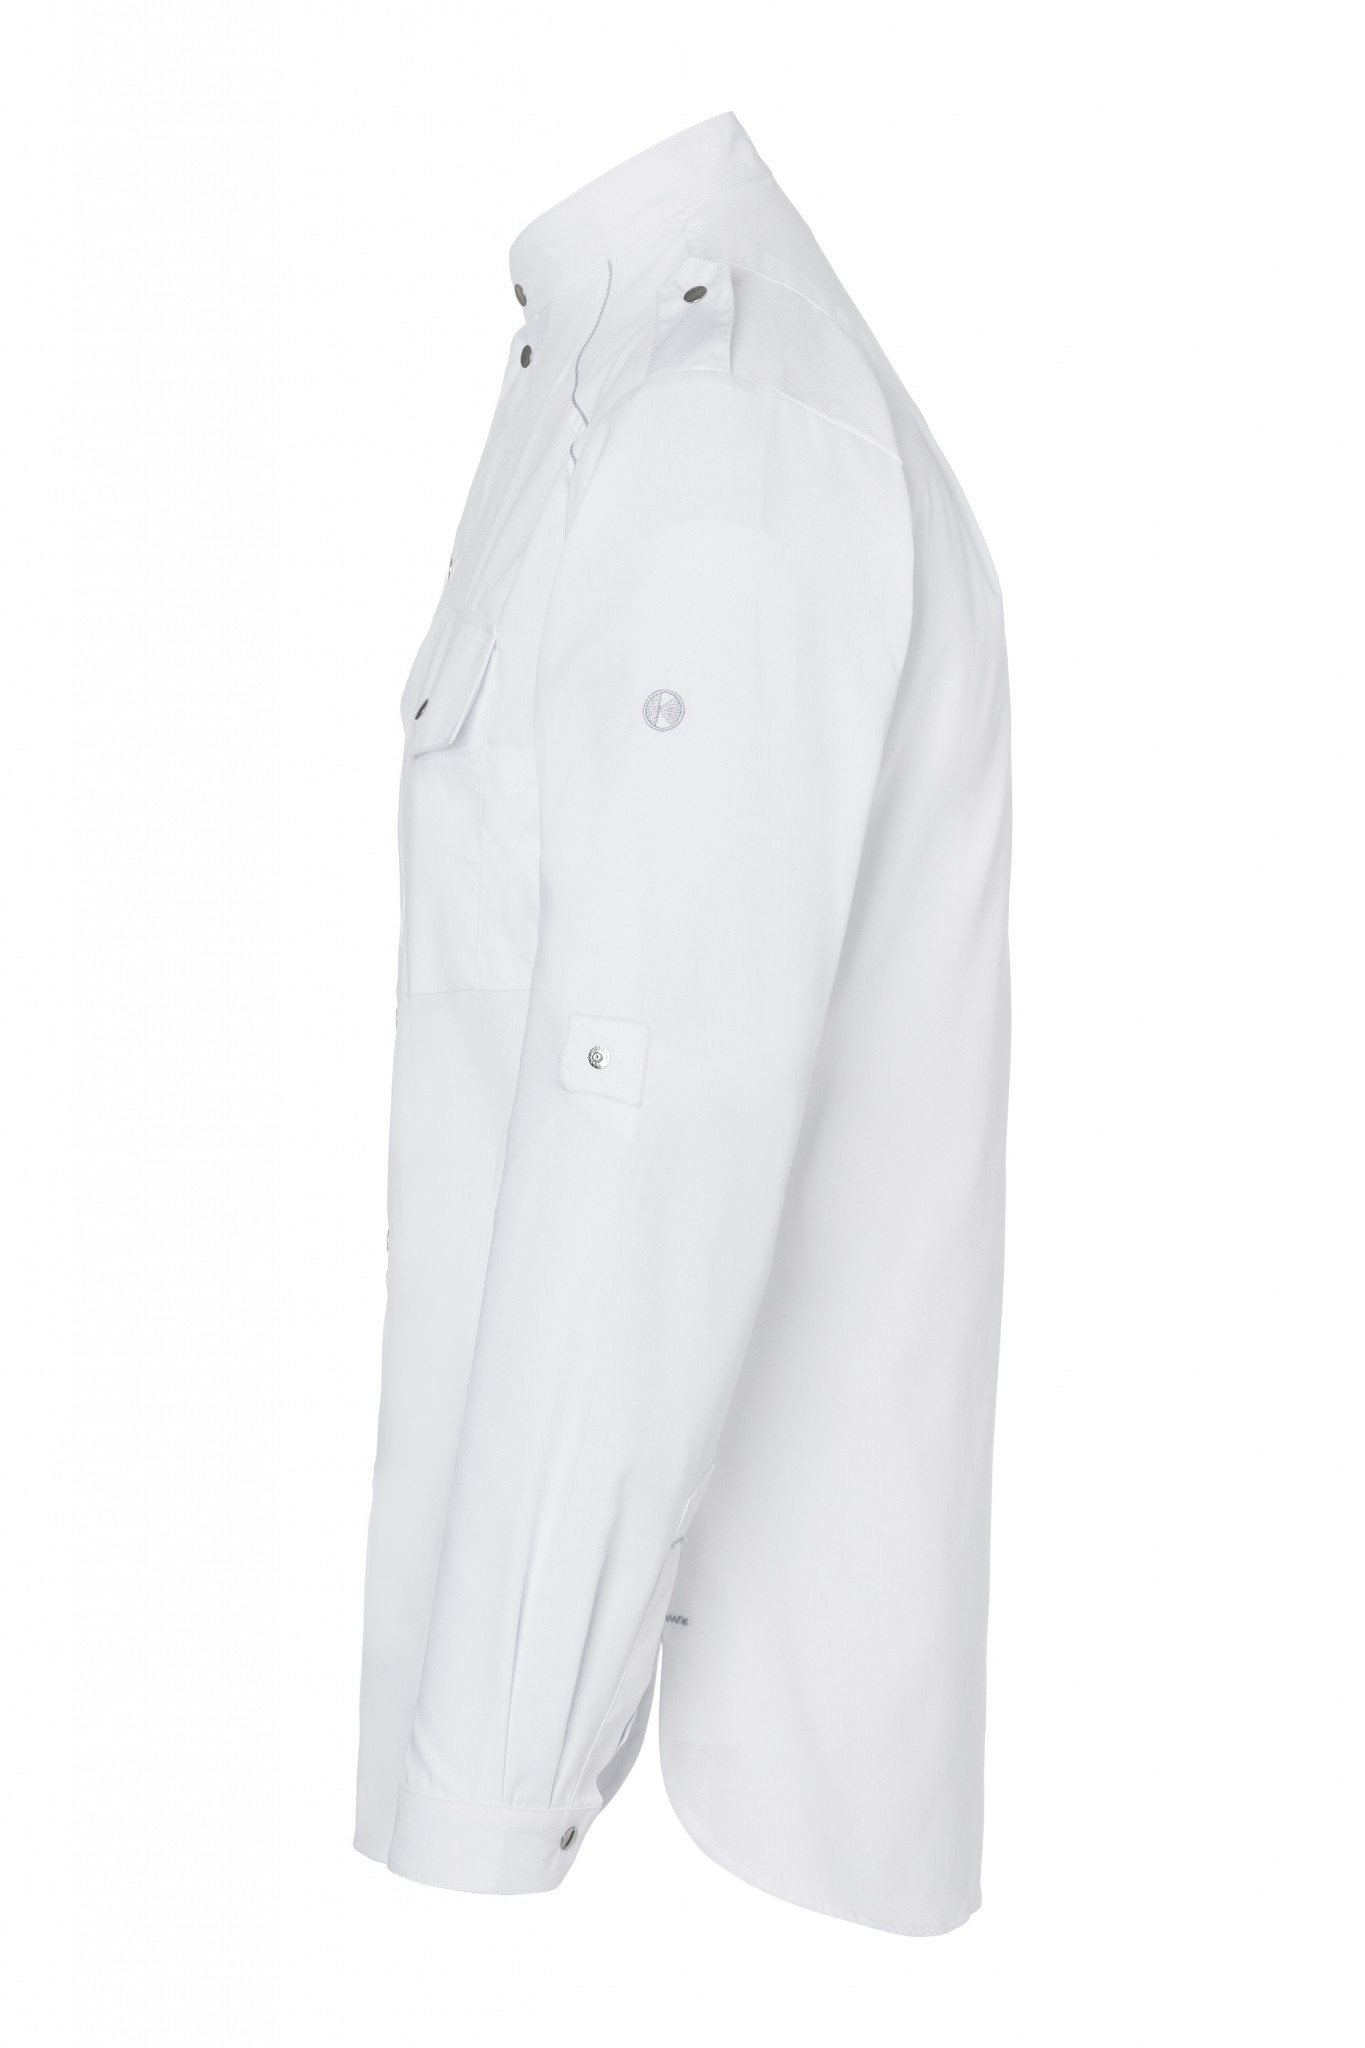 Kochhemd New Identity | Weiß | 50% Polyester / 50% Baumwolle | Erhältlich in 10 Größen